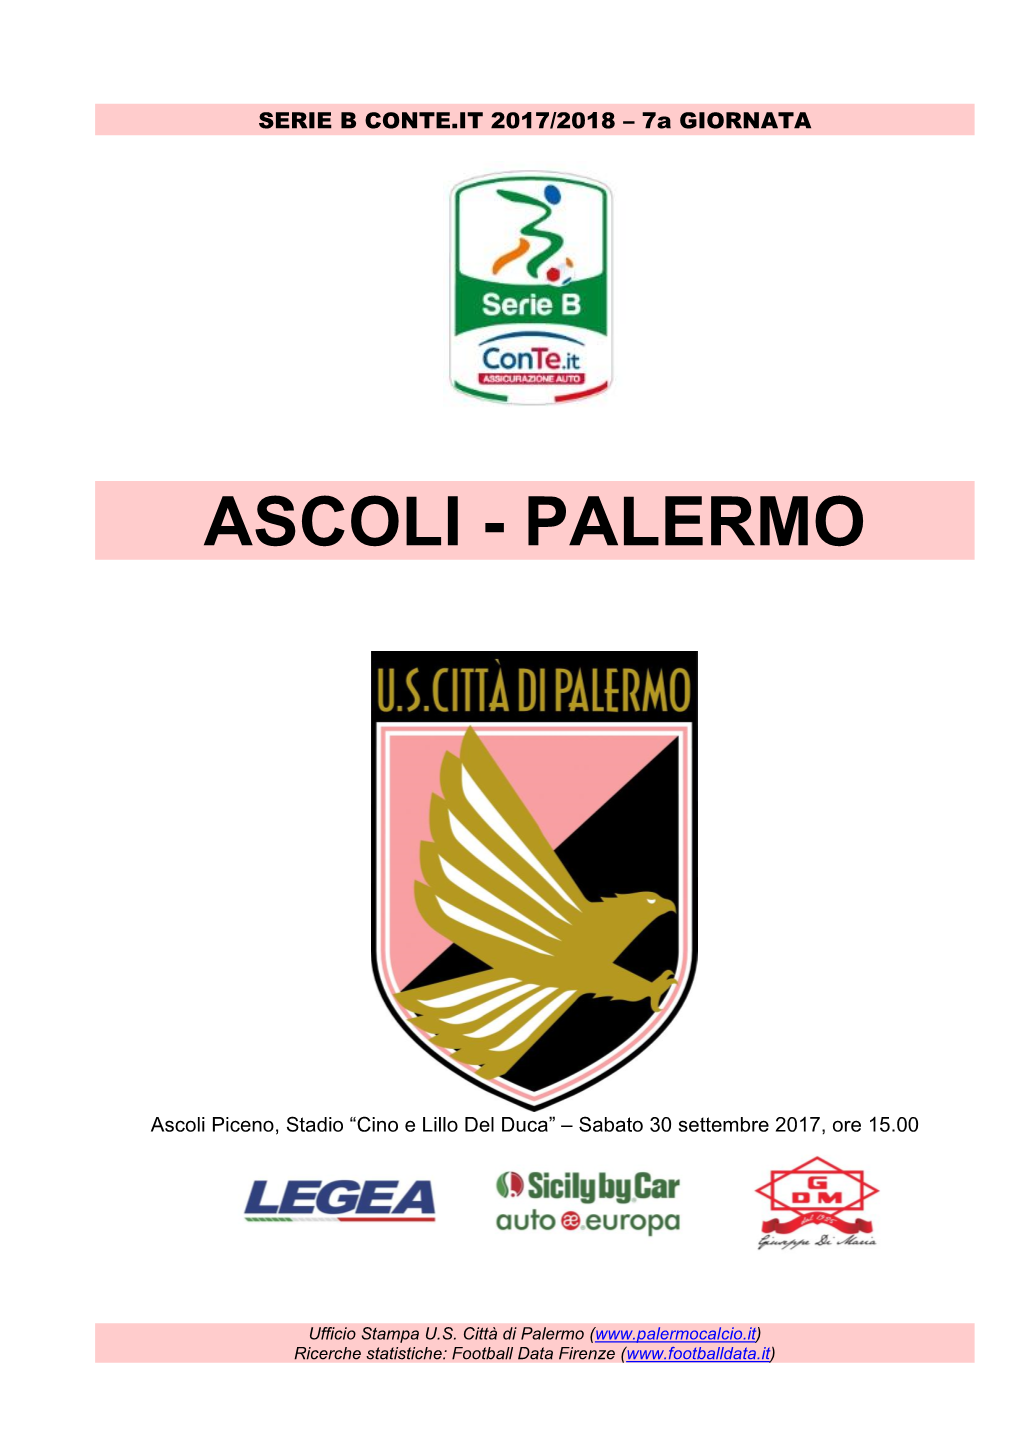 Ascoli - Palermo